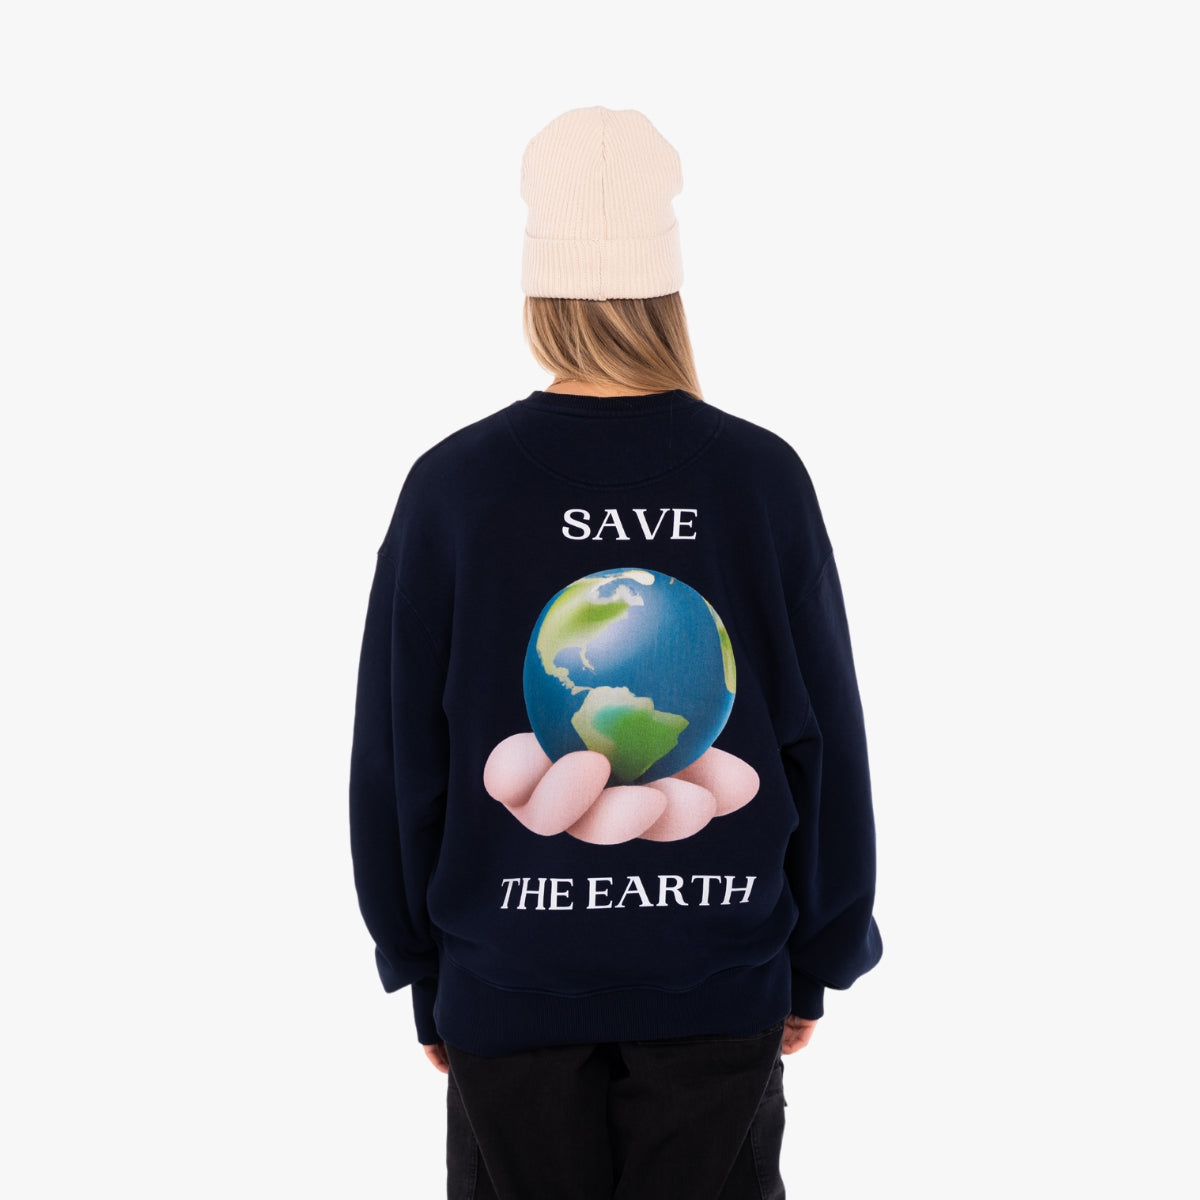 'SAVE THE EARTH' Organic Oversize Sweatshirt in der Farbe French Navy als Back Nahaufnahme getragen von einem weiblichen Model